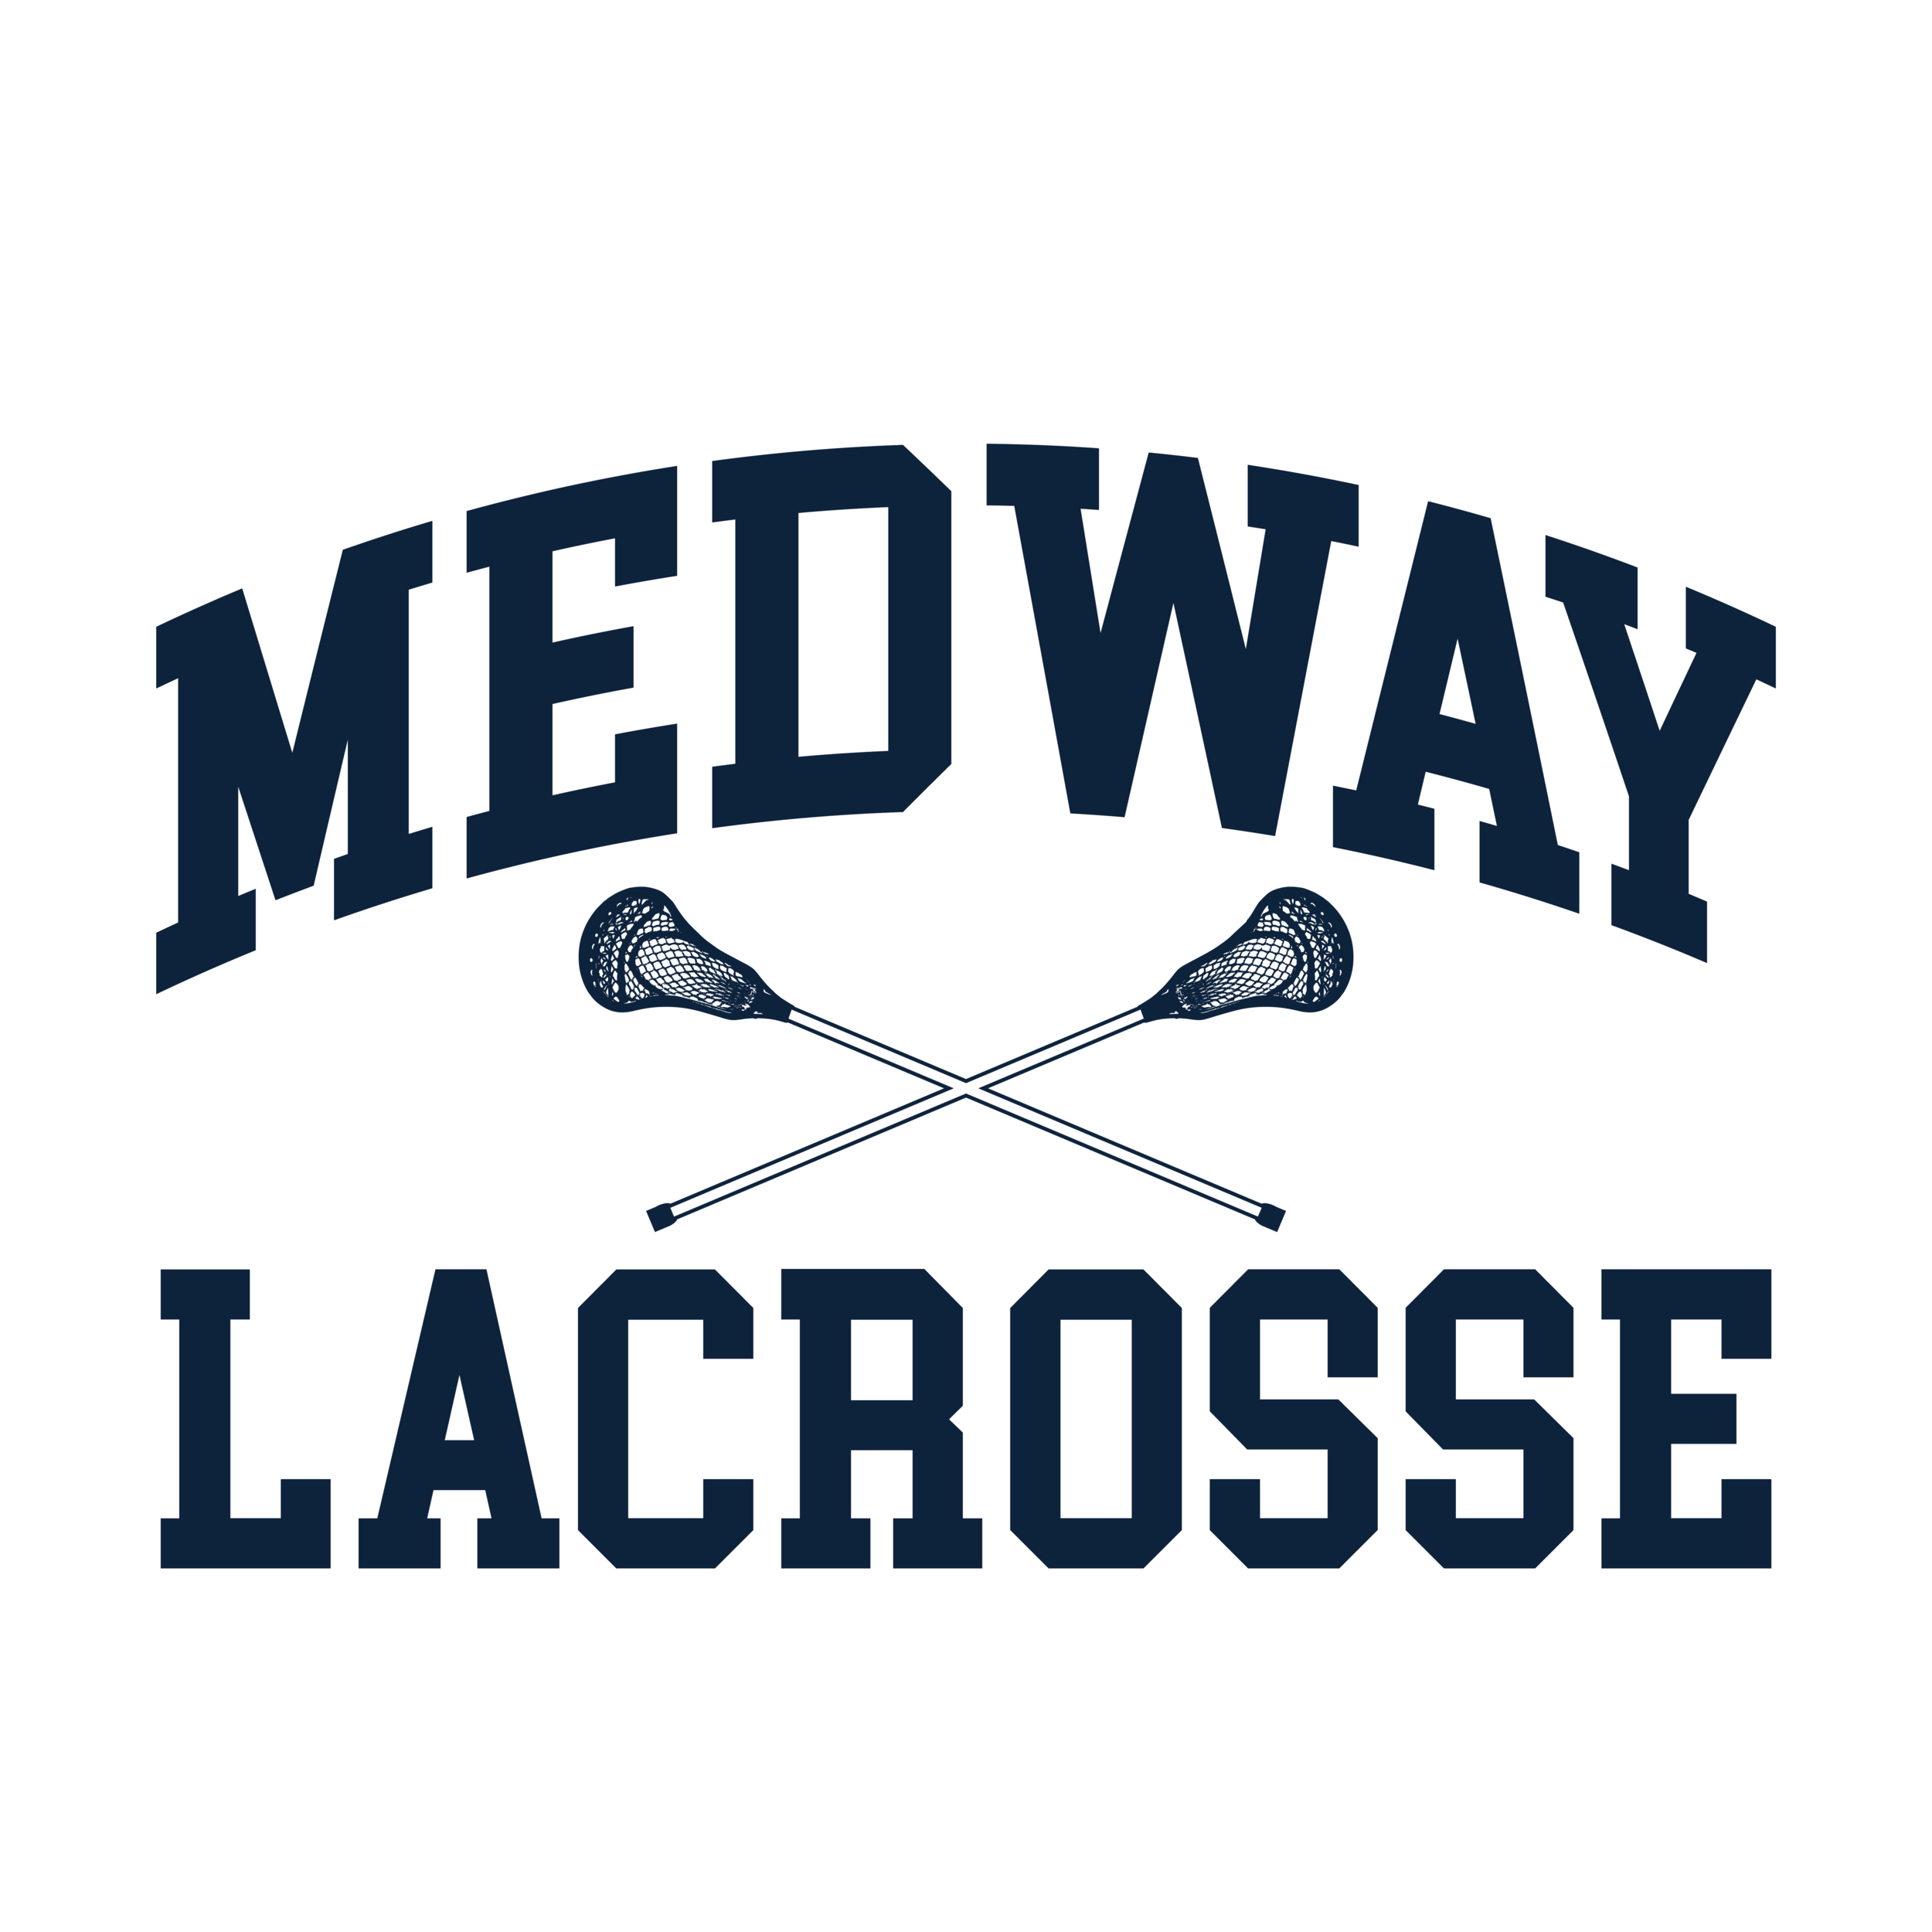 Medway Lacrosse Back 2 2 copy.png